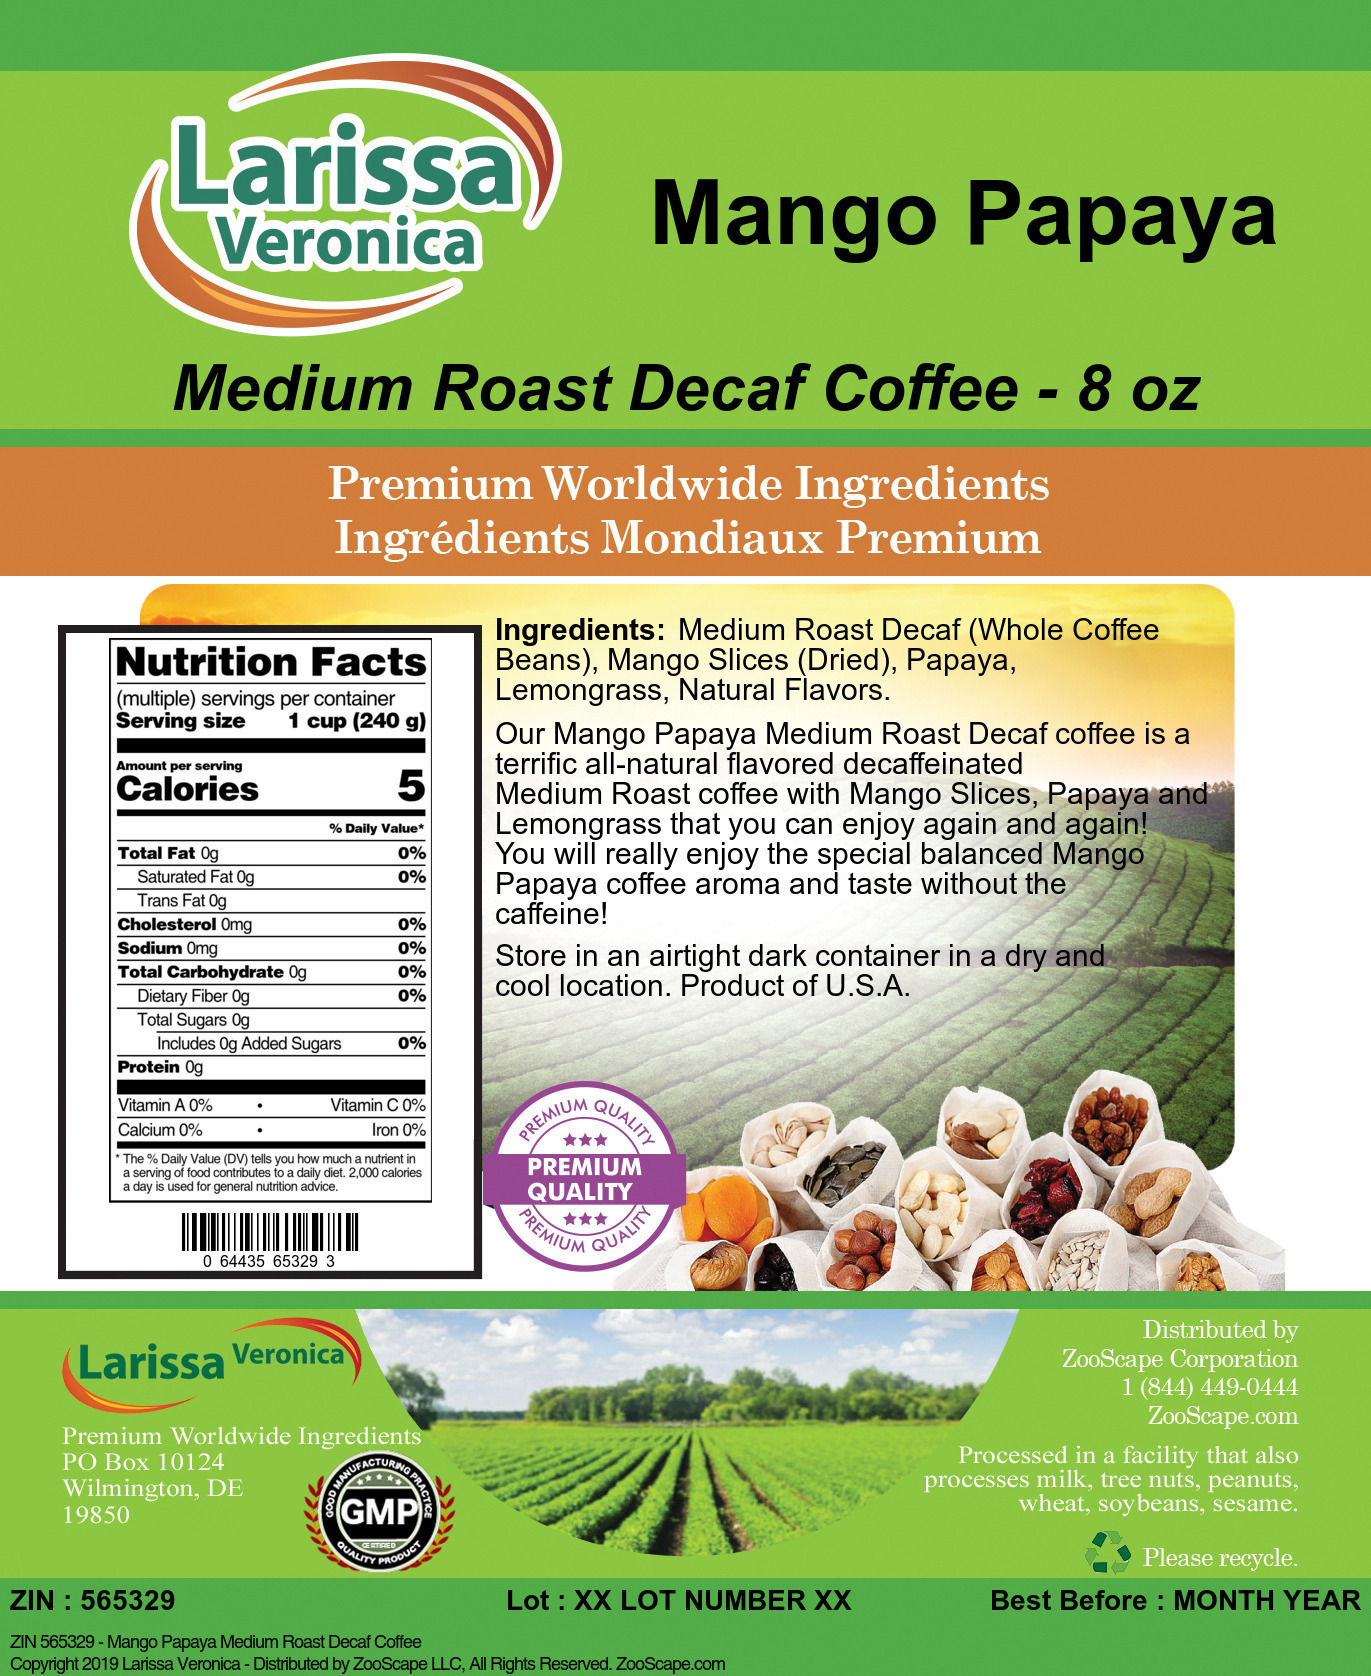 Mango Papaya Medium Roast Decaf Coffee - Label